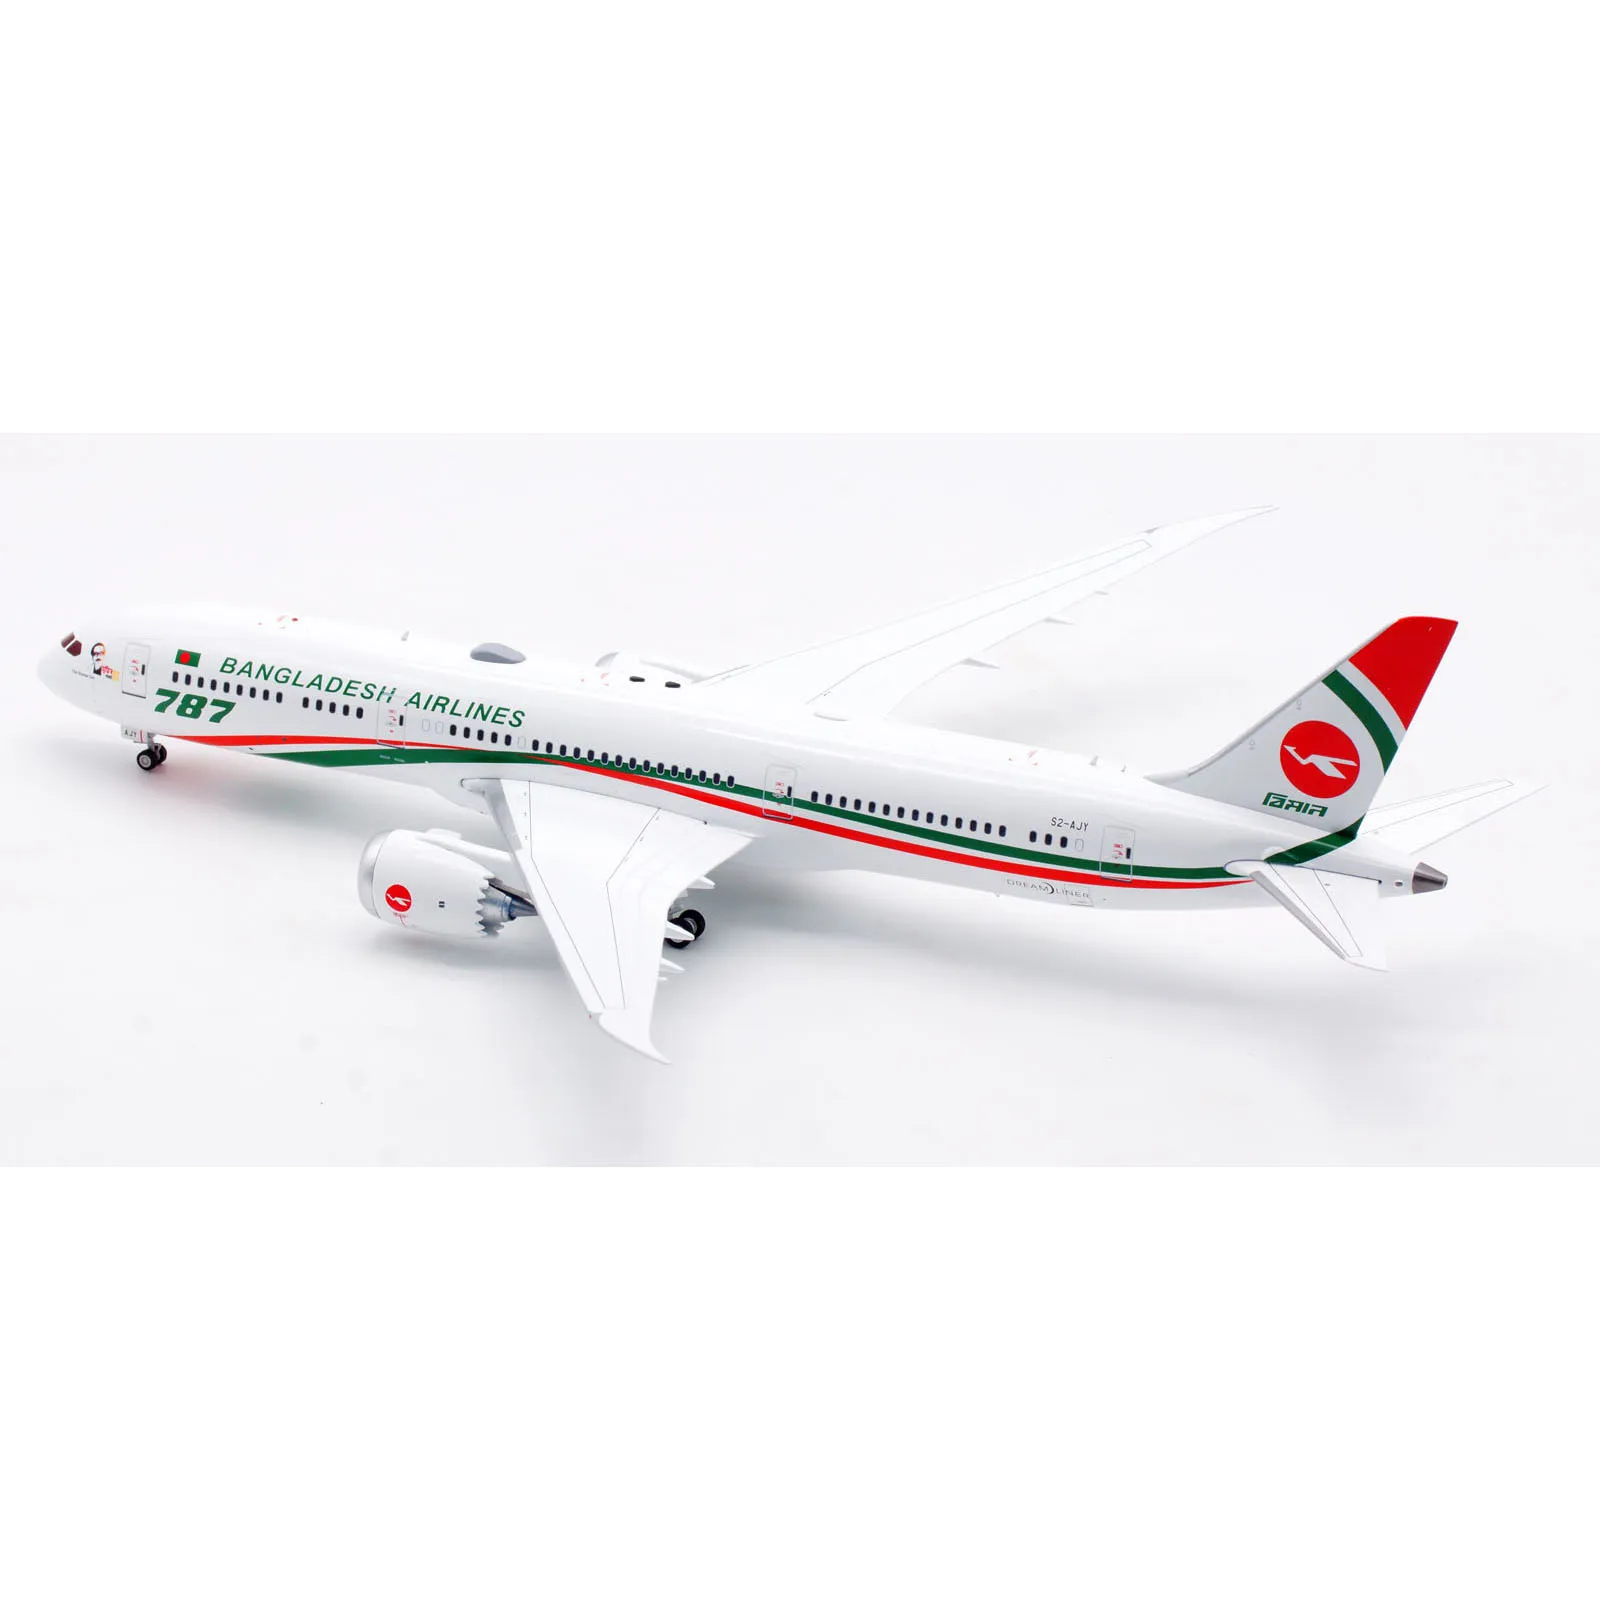 Infalloy koleksi hadiah pesawat INFLIGHT 1:200 Biman Bangladesh Airlines B787-9 menjulang Model pesawat terbang Diecast S2-AJY